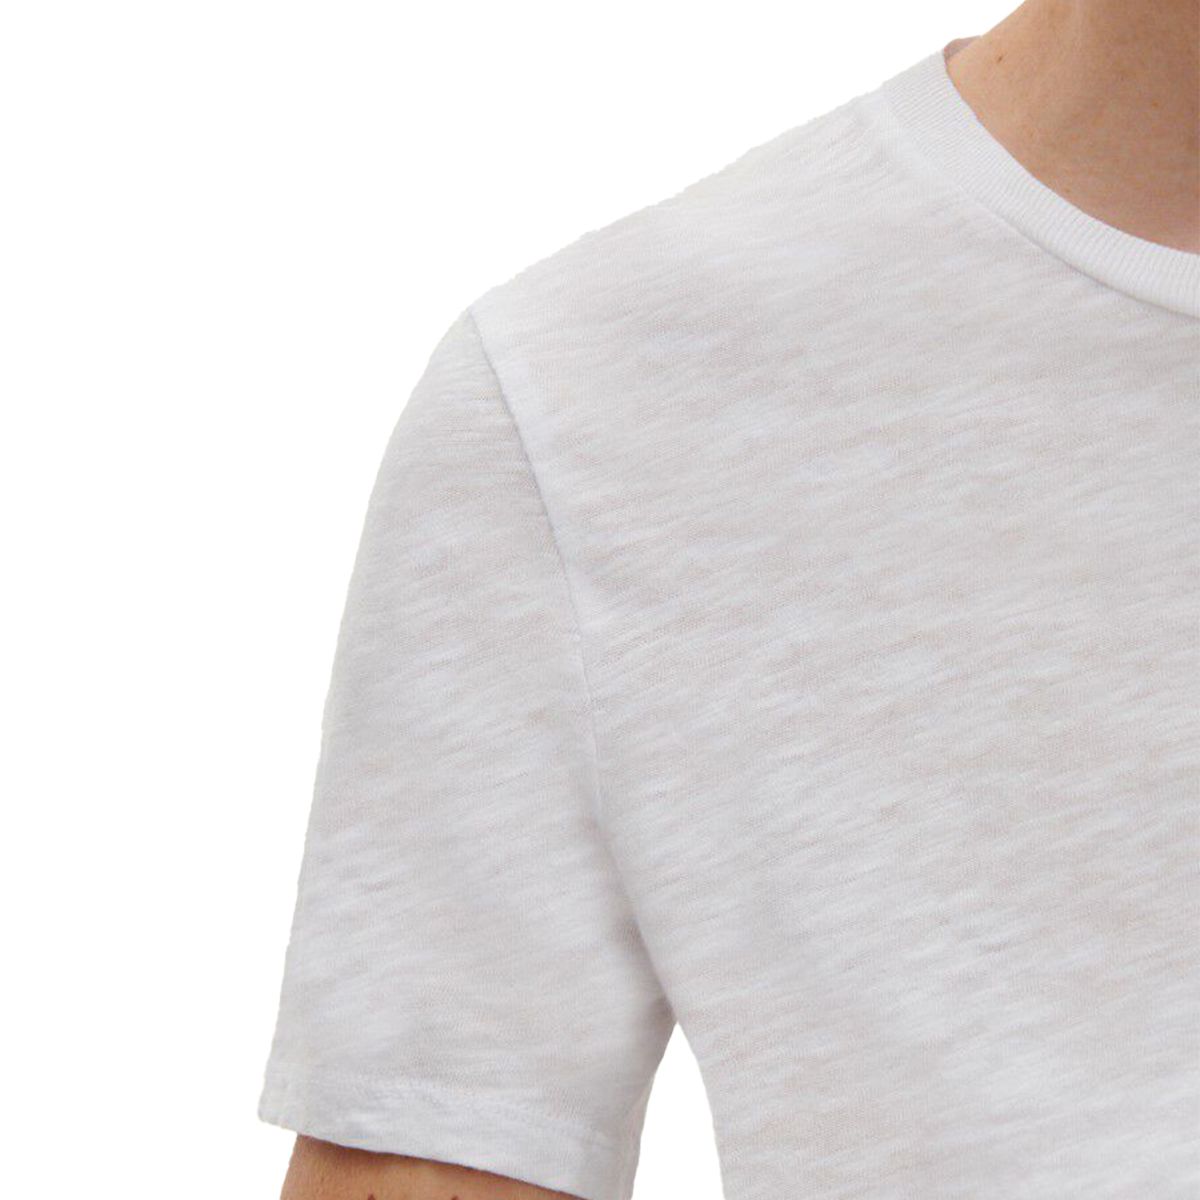 Bysapick T-Shirt/White